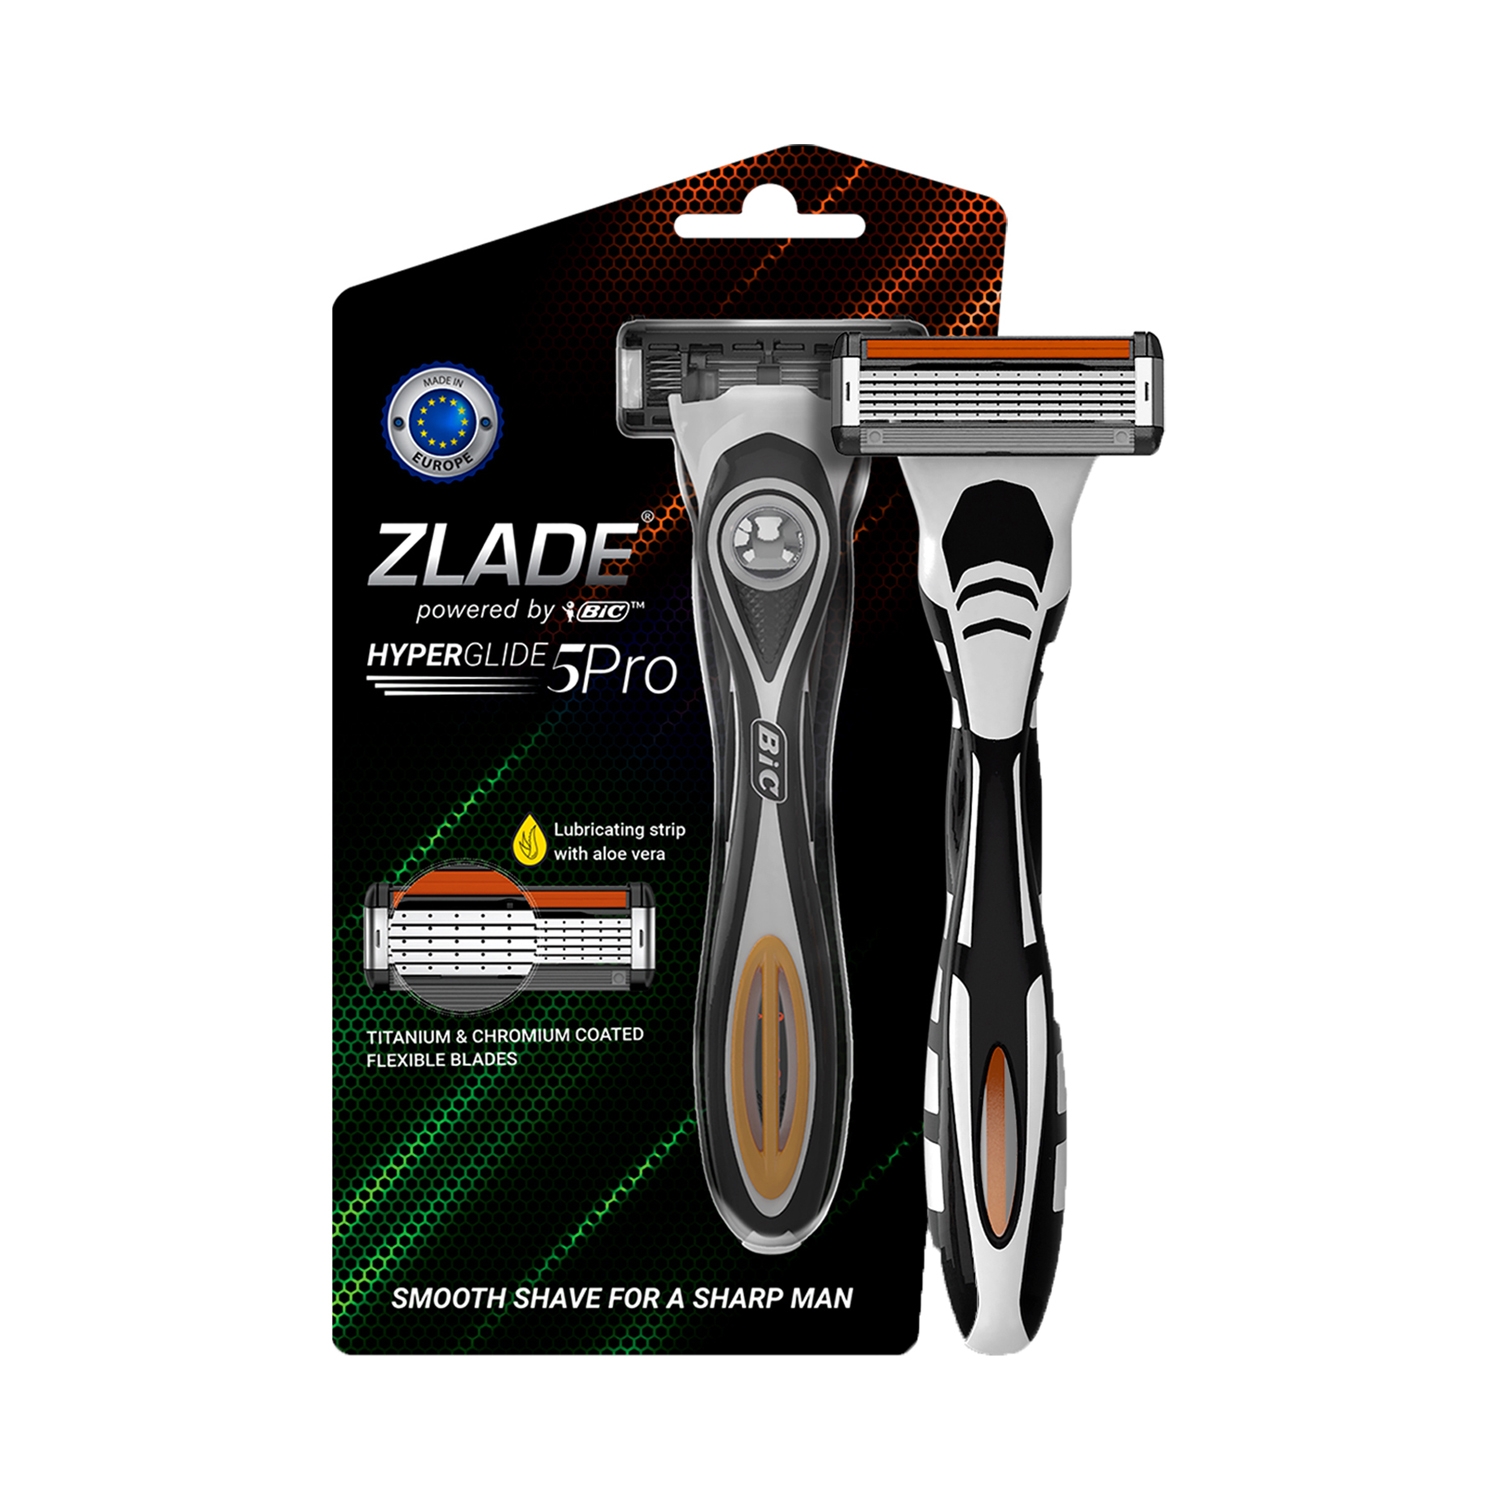 Zlade Hyperglide 5 Pro Sports Edition Shaving Razor For Men